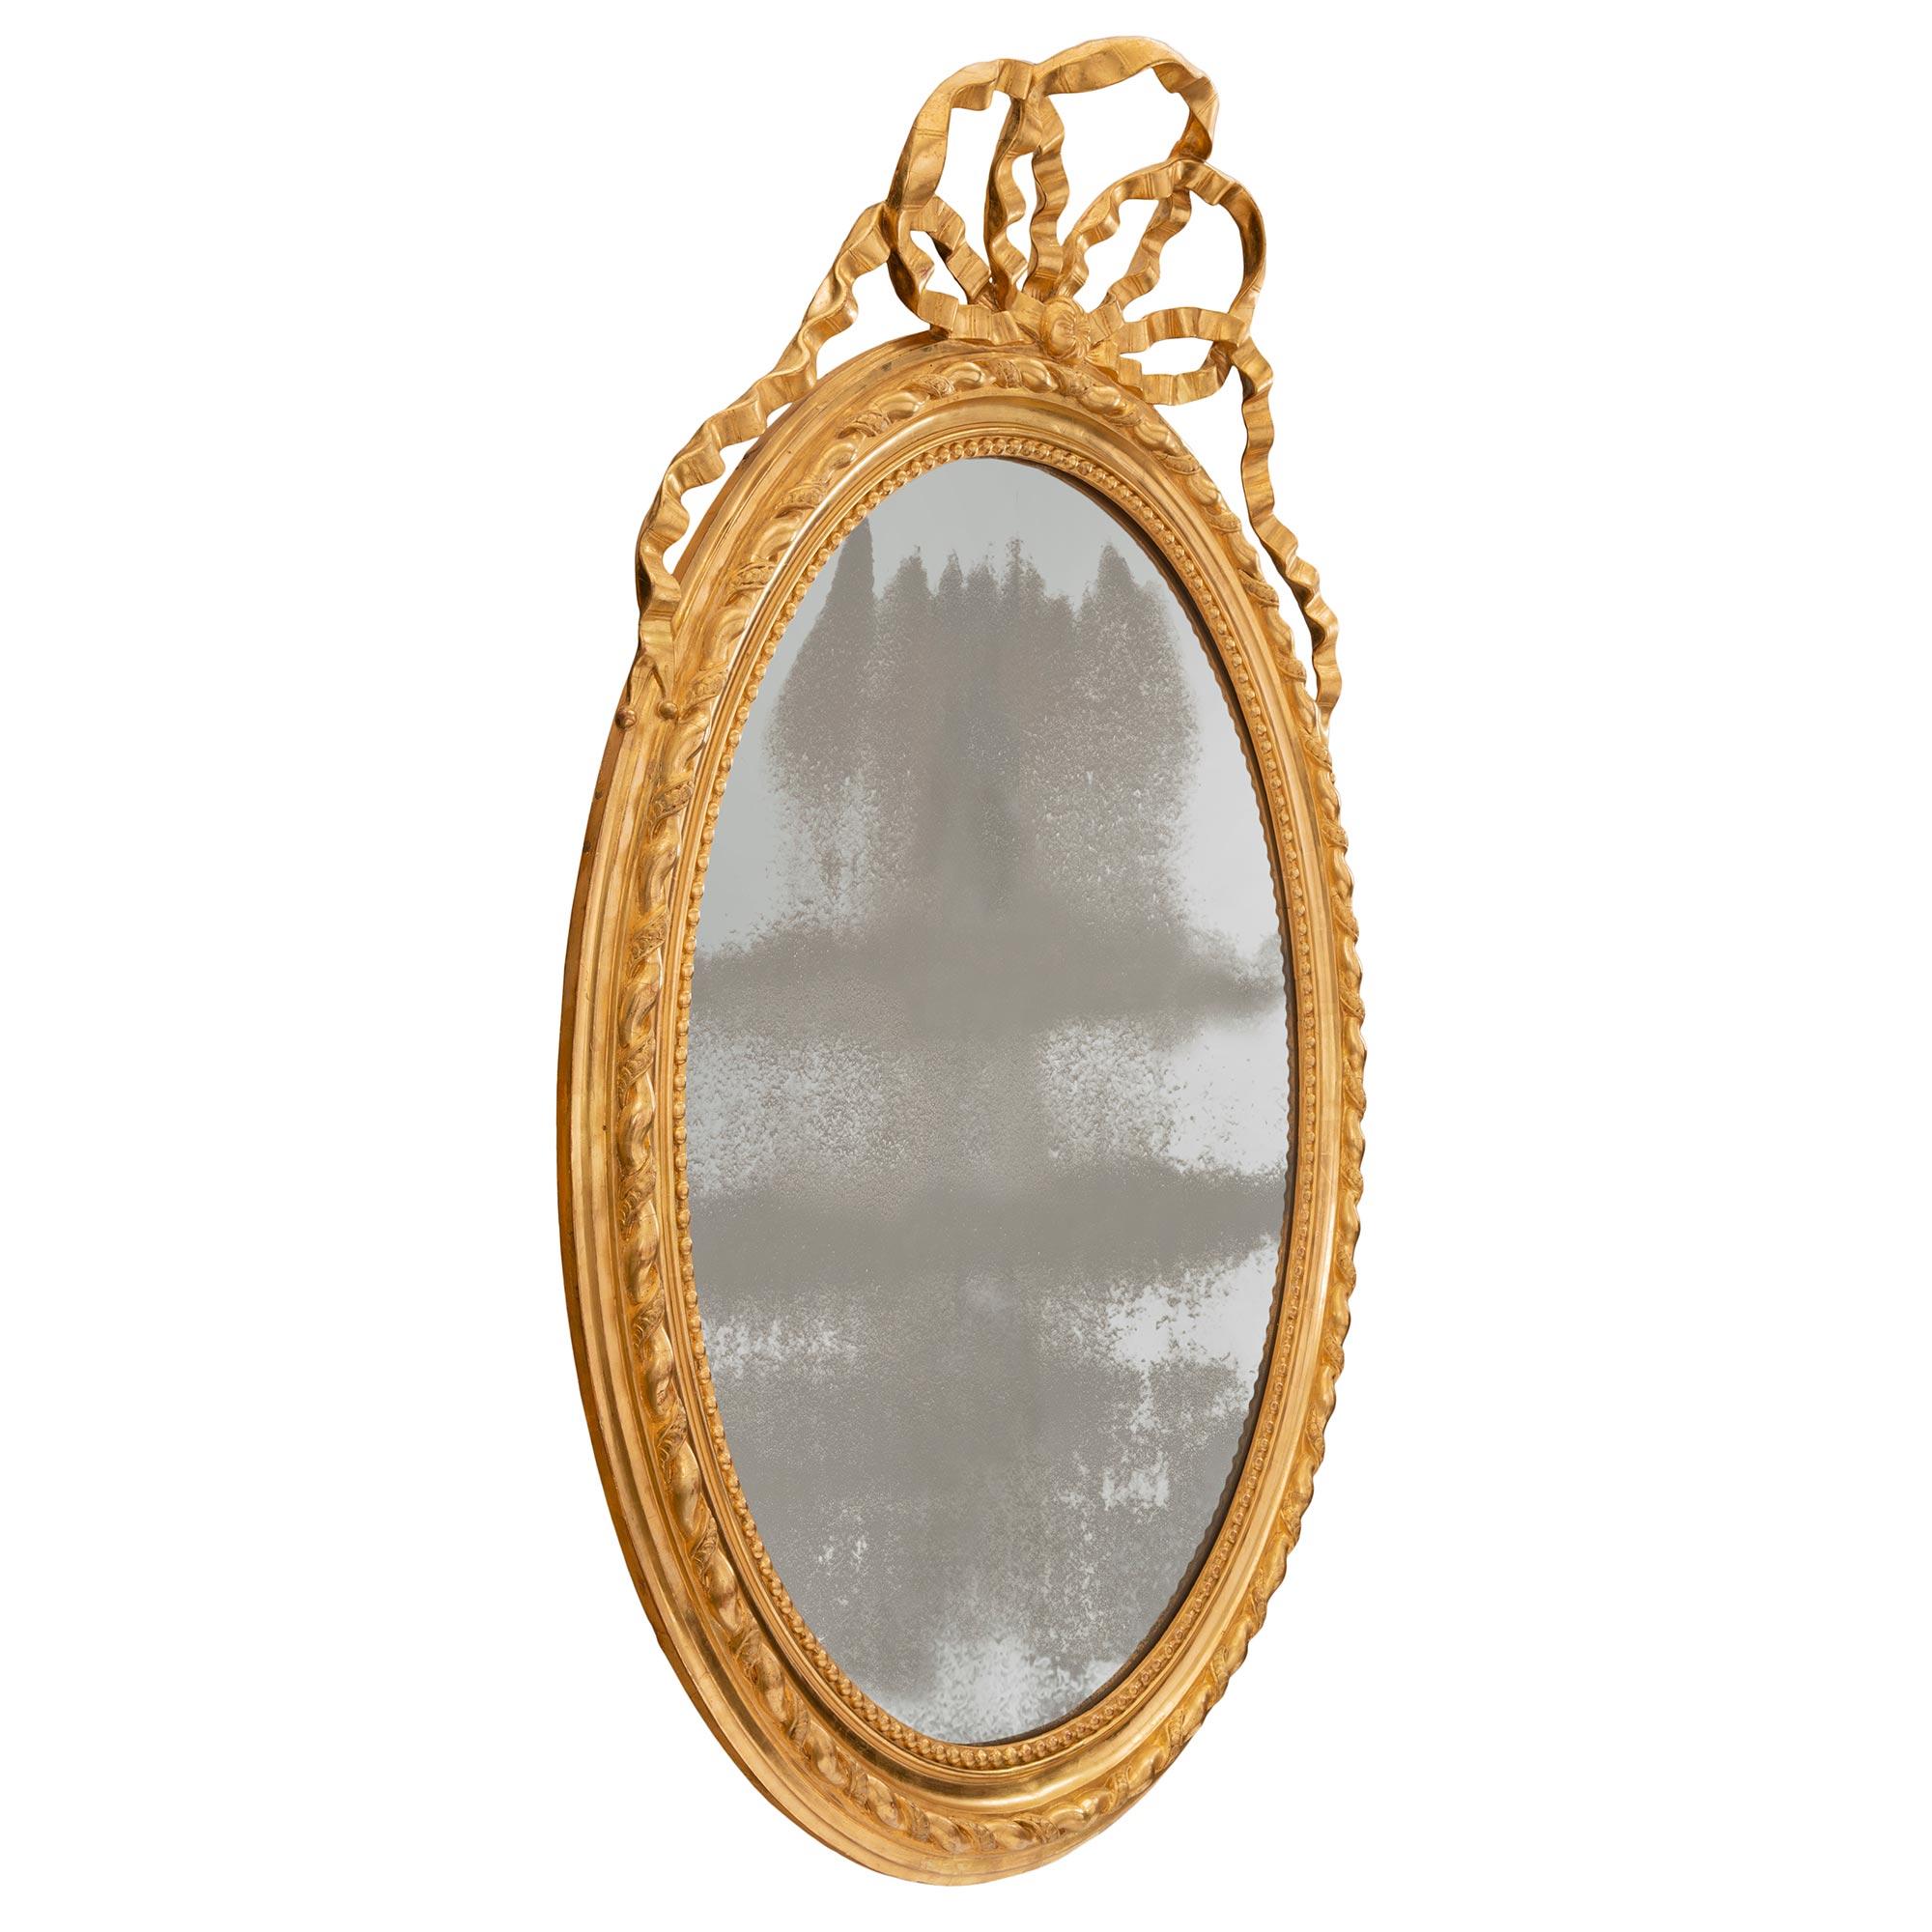 Très élégant miroir ovale en bois doré de style Louis XVI du XIXe siècle. La plaque de miroir d'origine est encadrée d'une jolie bordure perlée et mouchetée. Le bord est orné d'un fin motif torsadé qui se prolonge dans tout le cadre. Ci-dessus, un